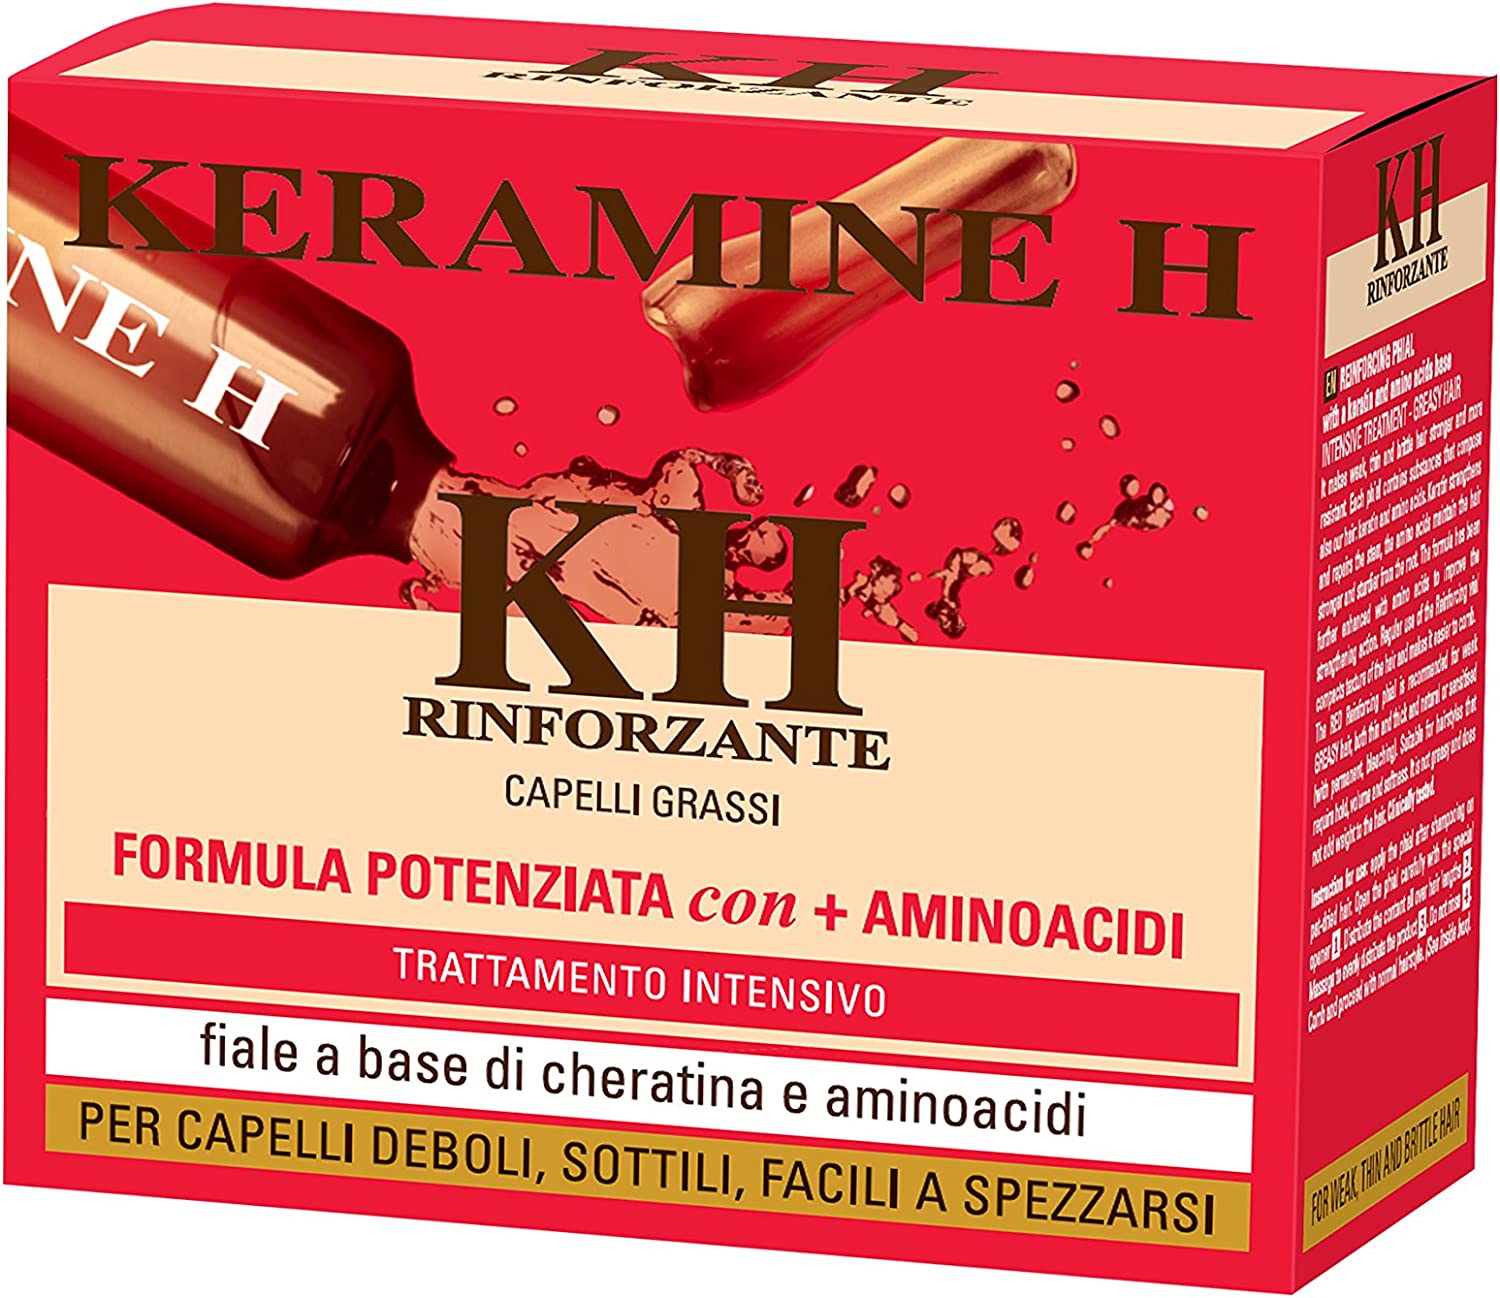 soco-societa' cosmetici spa keramine h fascia rossa - trattamento rinforzante per capelli grassi - 10 fiale x 10 ml